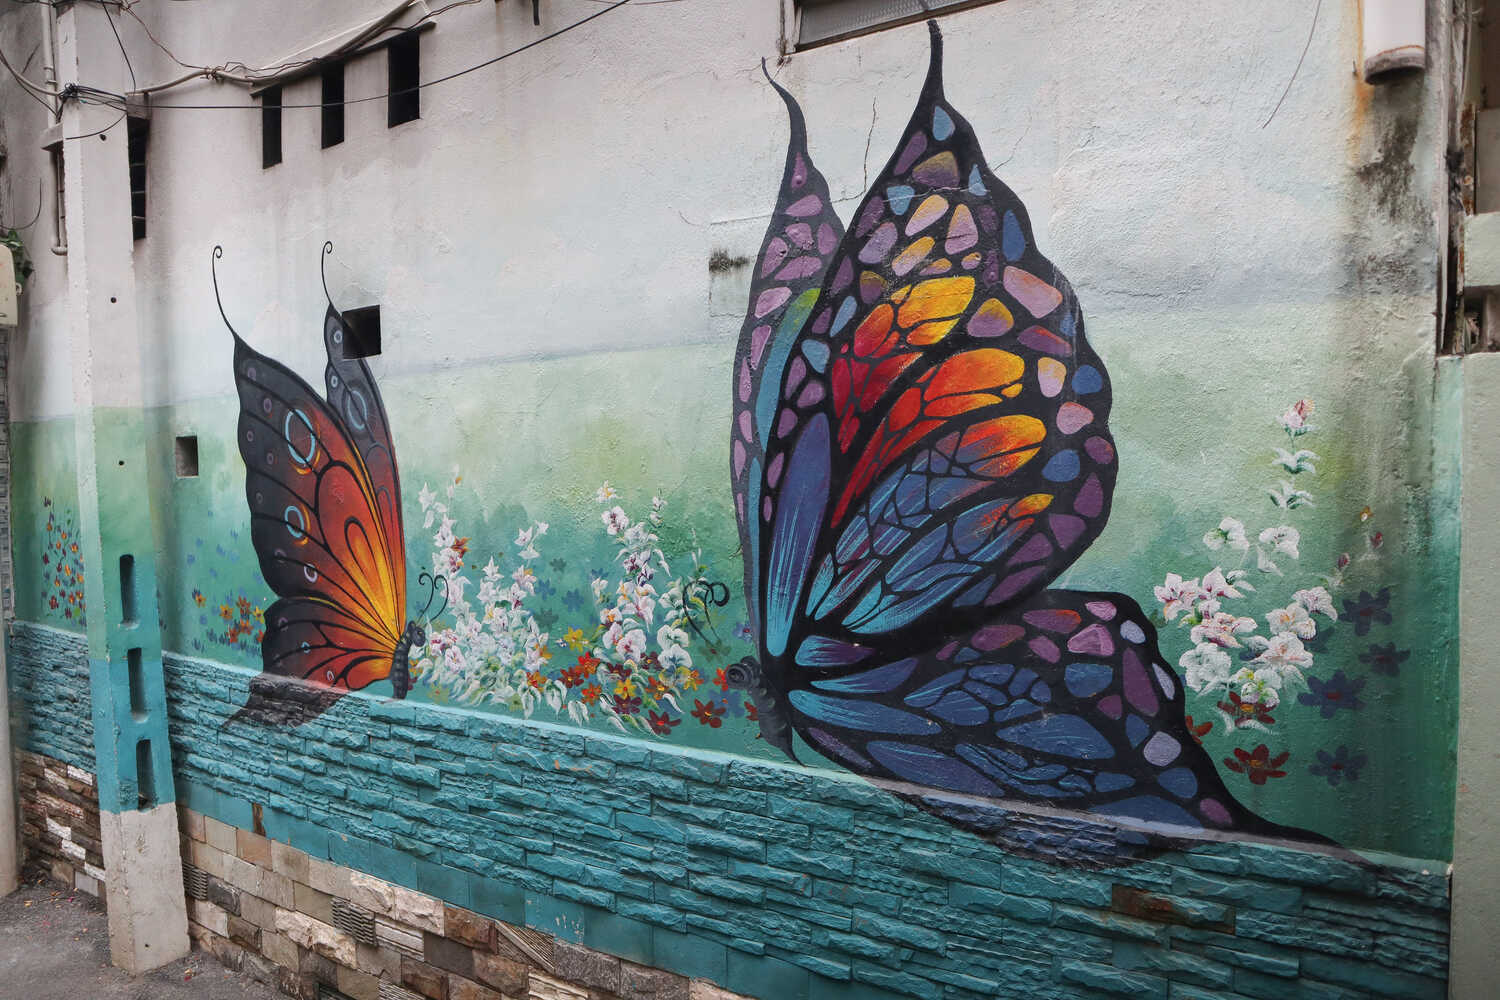 Butterfly graffiti at Da Nang Fresco Village